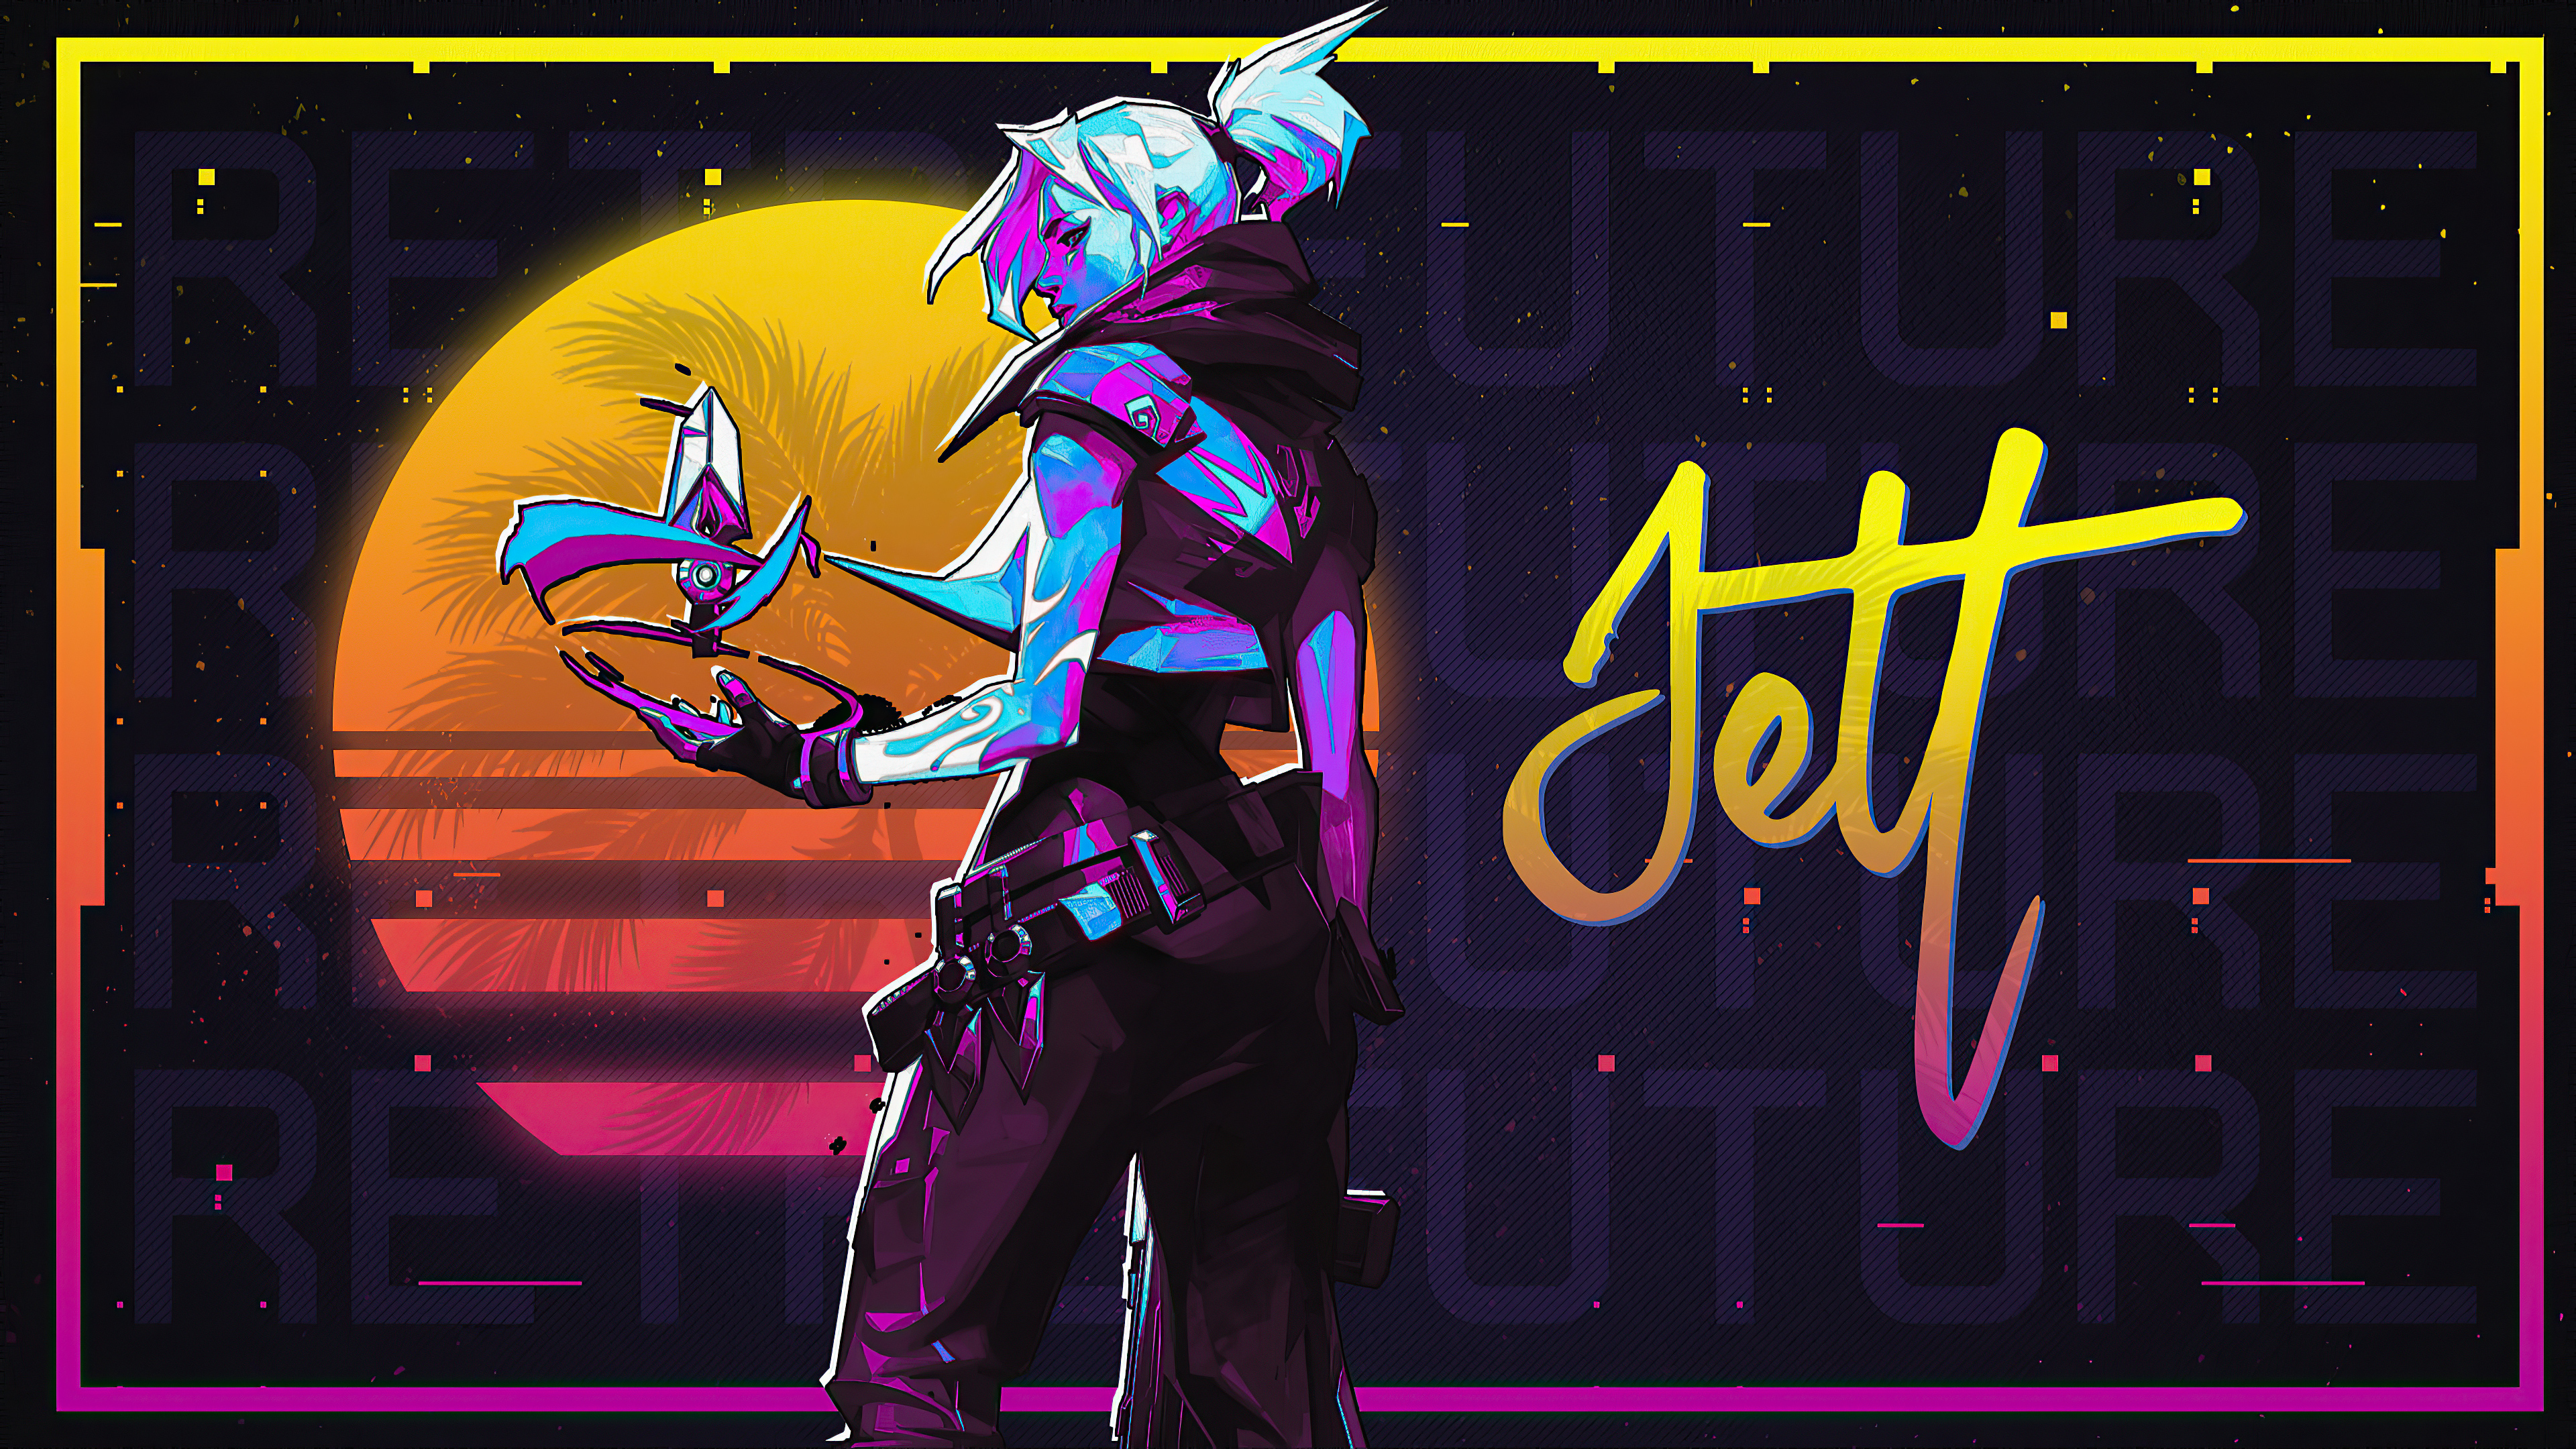 Jett Valorant là một nhân vật vô cùng thú vị, mang đậm tính năng động, nhanh nhẹn của game Valorant. Hãy thưởng thức hình ảnh của Jett và tìm hiểu hơn về nhân vật này nhé.